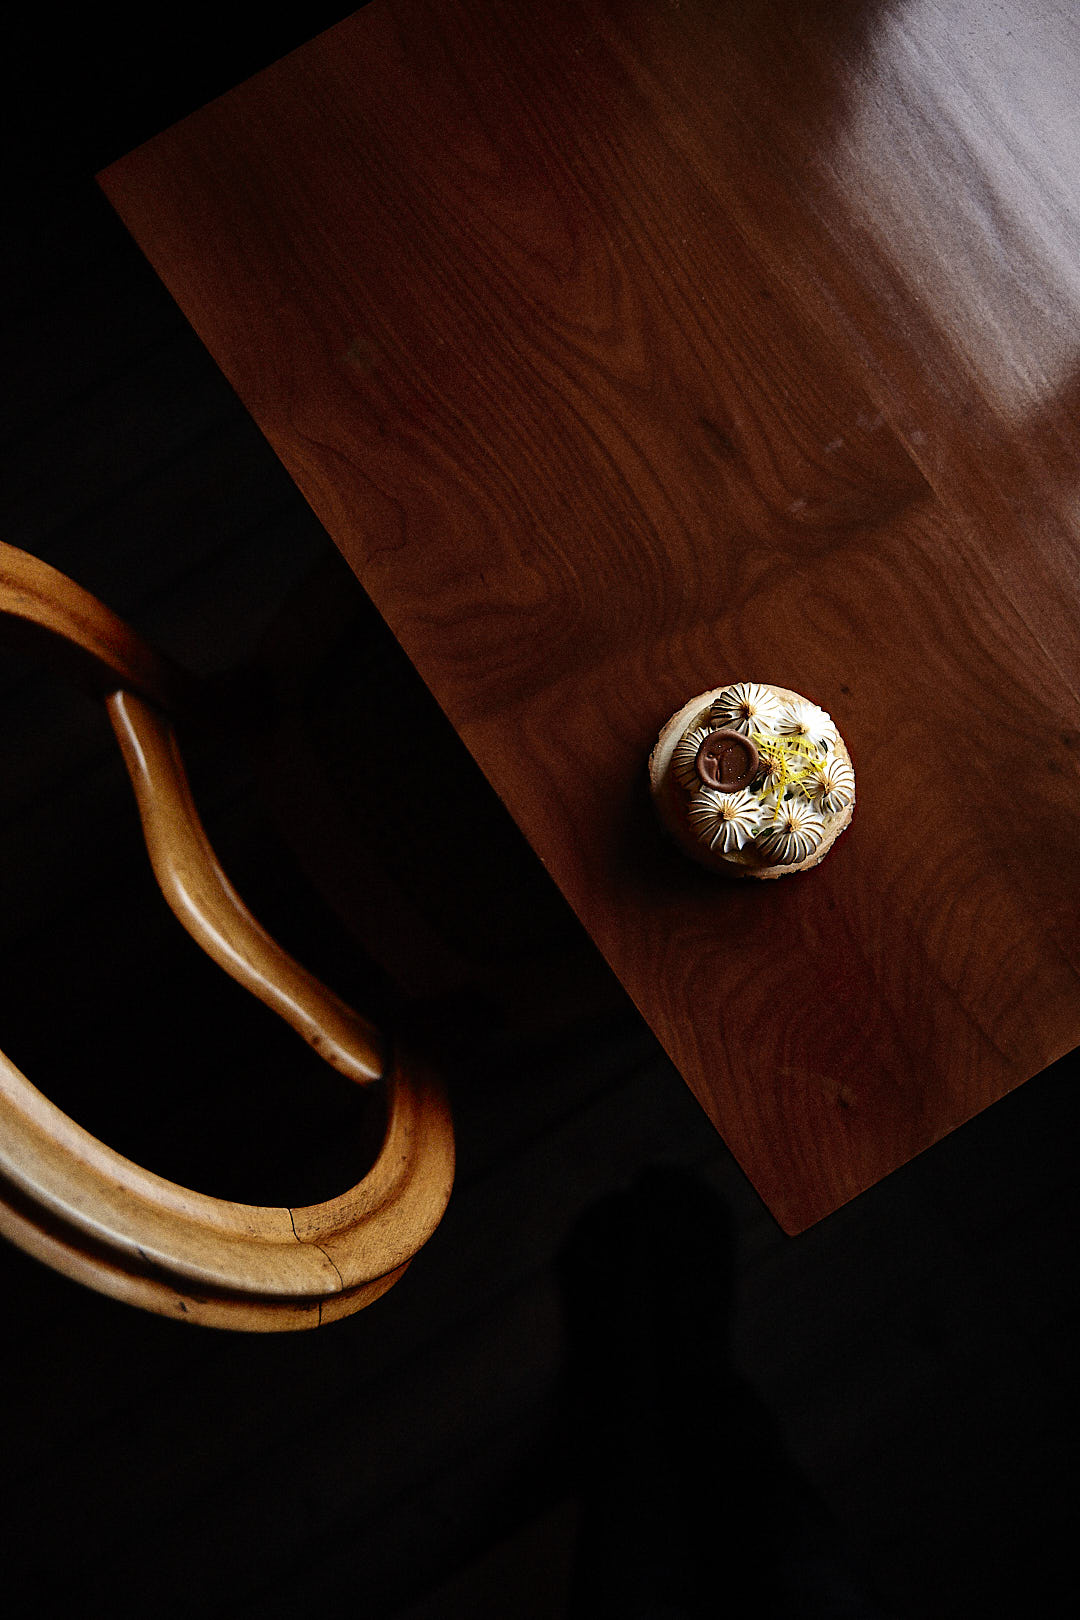 Produktfoto von einem Zitronen-Törtchen von Tartes&Törtchen aus Bielefeld, fotografiert auf einem Holztisch schräg im Anschitt, die Stuhllehne den am Tisch stehenden Holzstuhles ist sichtbar, der Boden liegt im Dunkeln